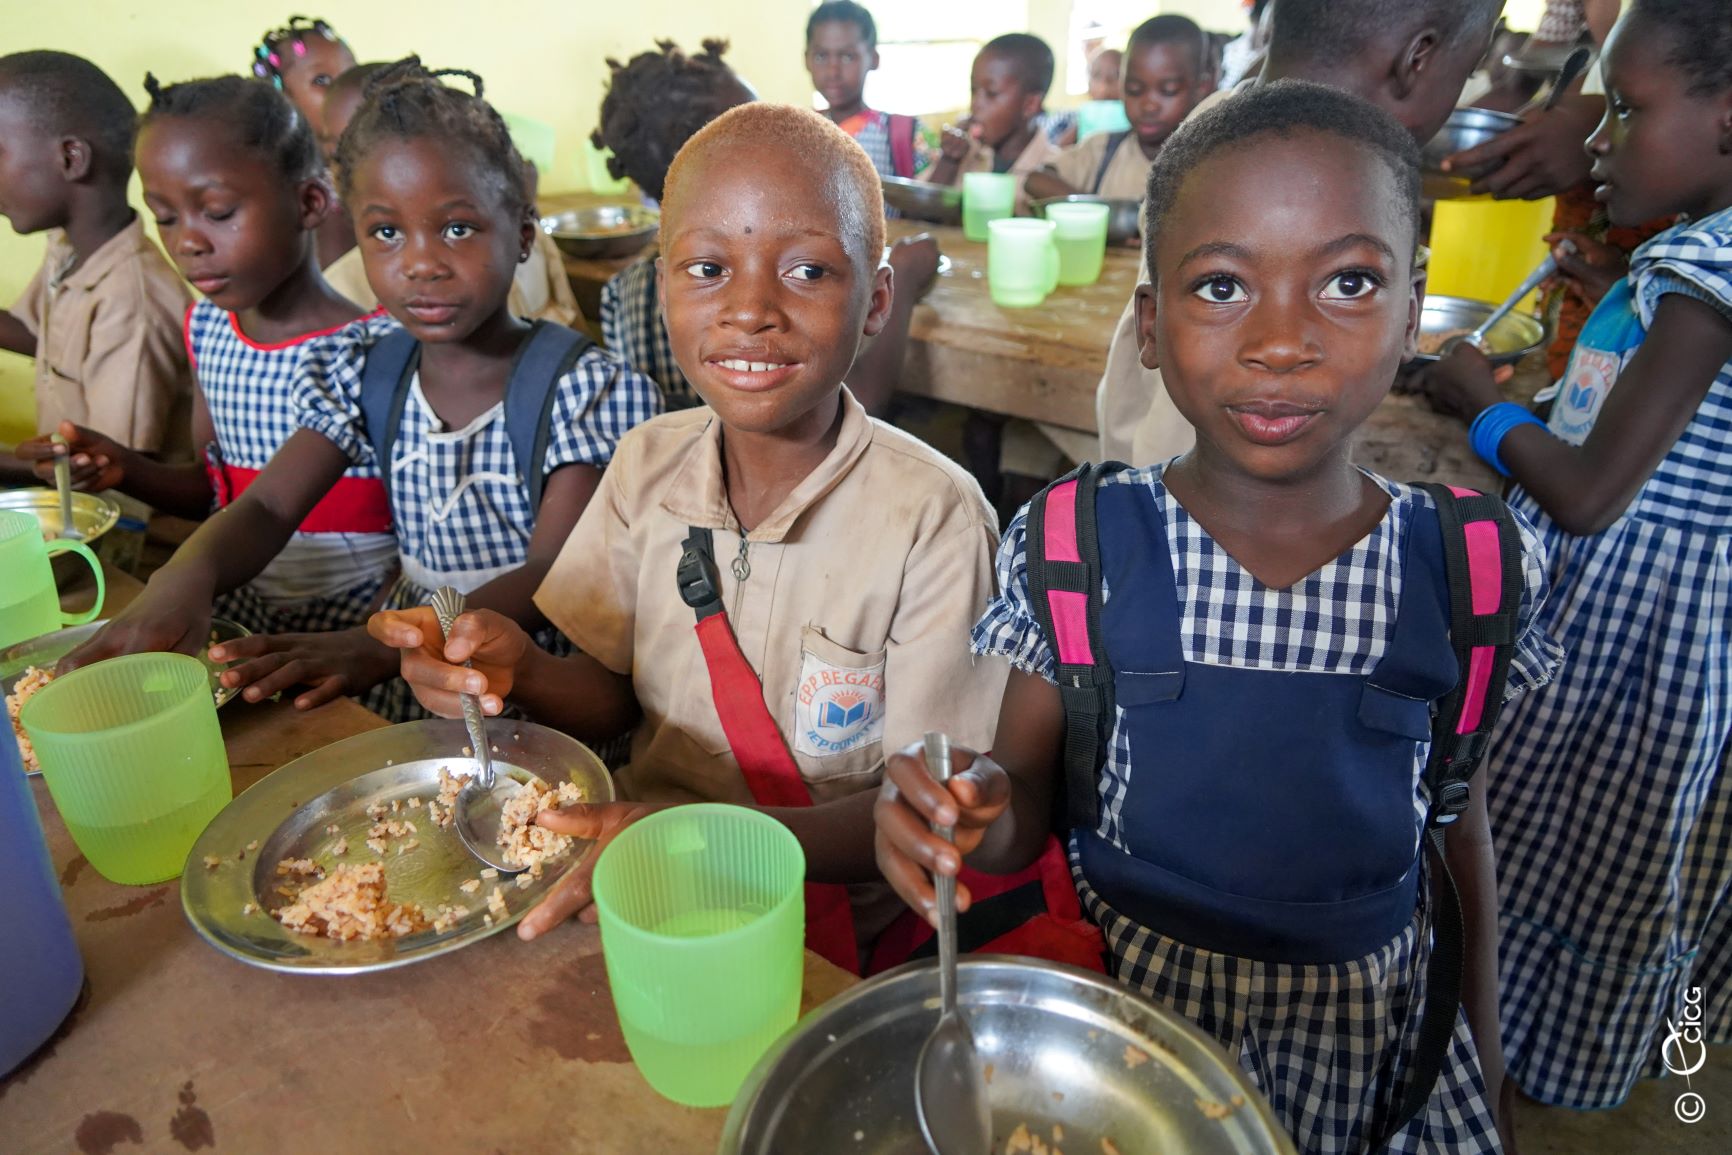 Cantines scolaires en Côte d'Ivoire : Impact positif sur les élèves, mais développement nécessaire